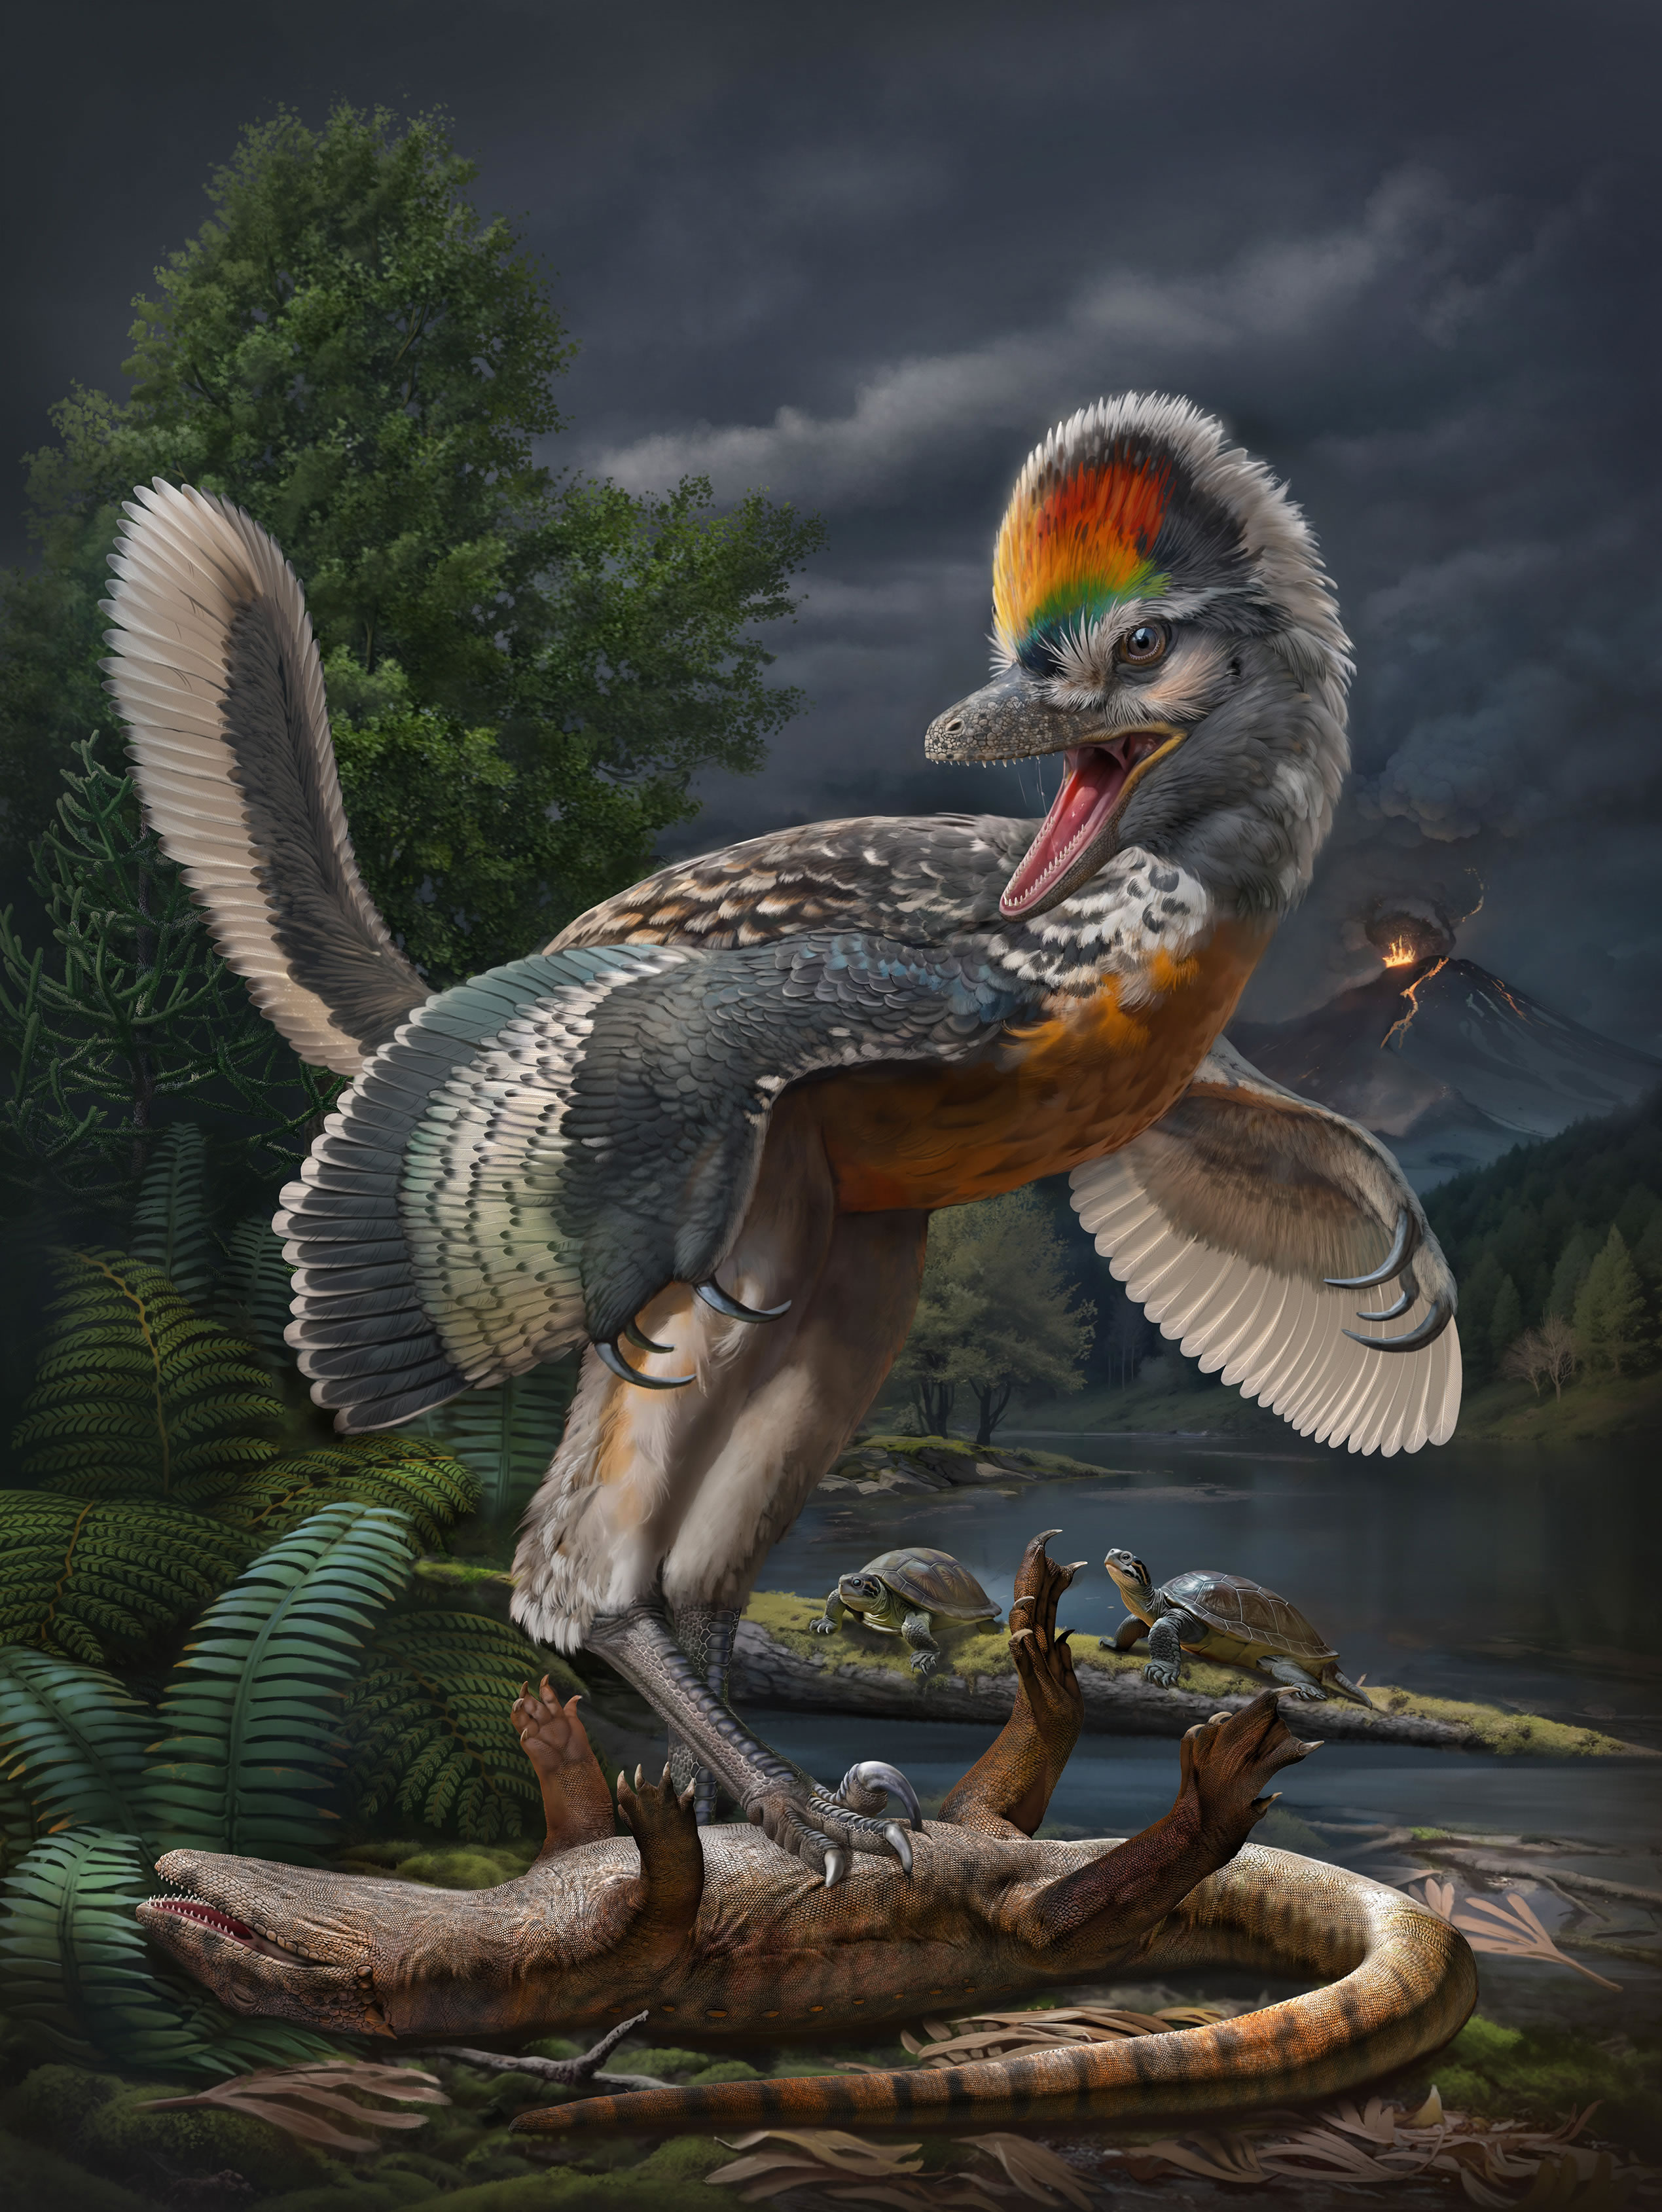 中国发现新的鸟翼类恐龙“奇异福建龙”和侏罗纪陆相动物群